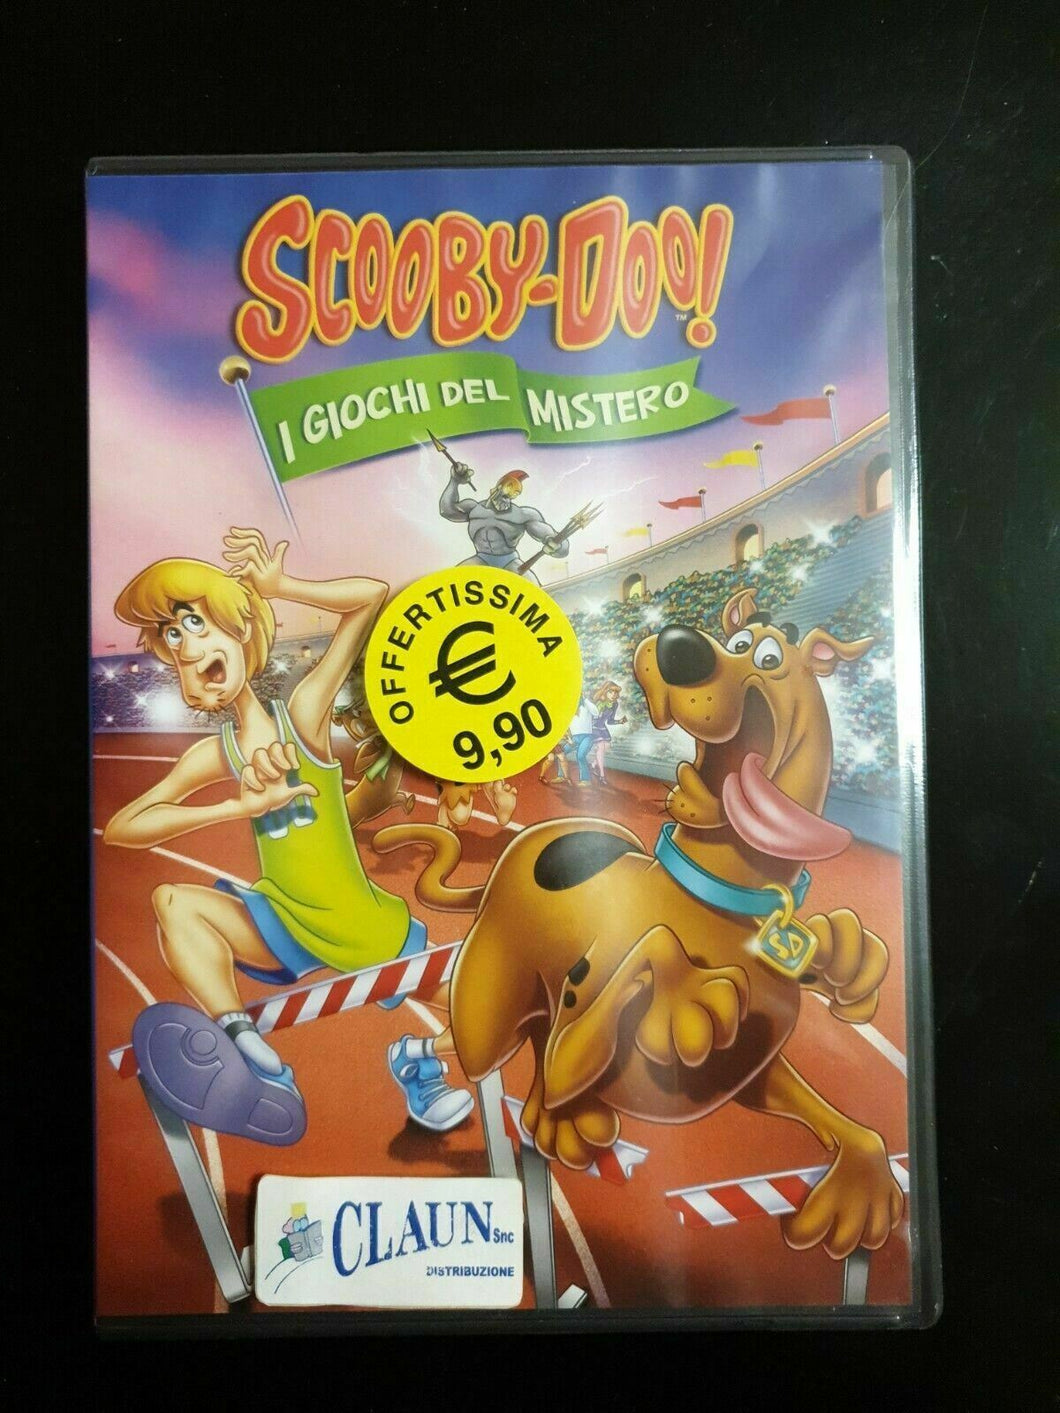 Scooby Doo - I Giochi Del Mistero  DVD Nuovo